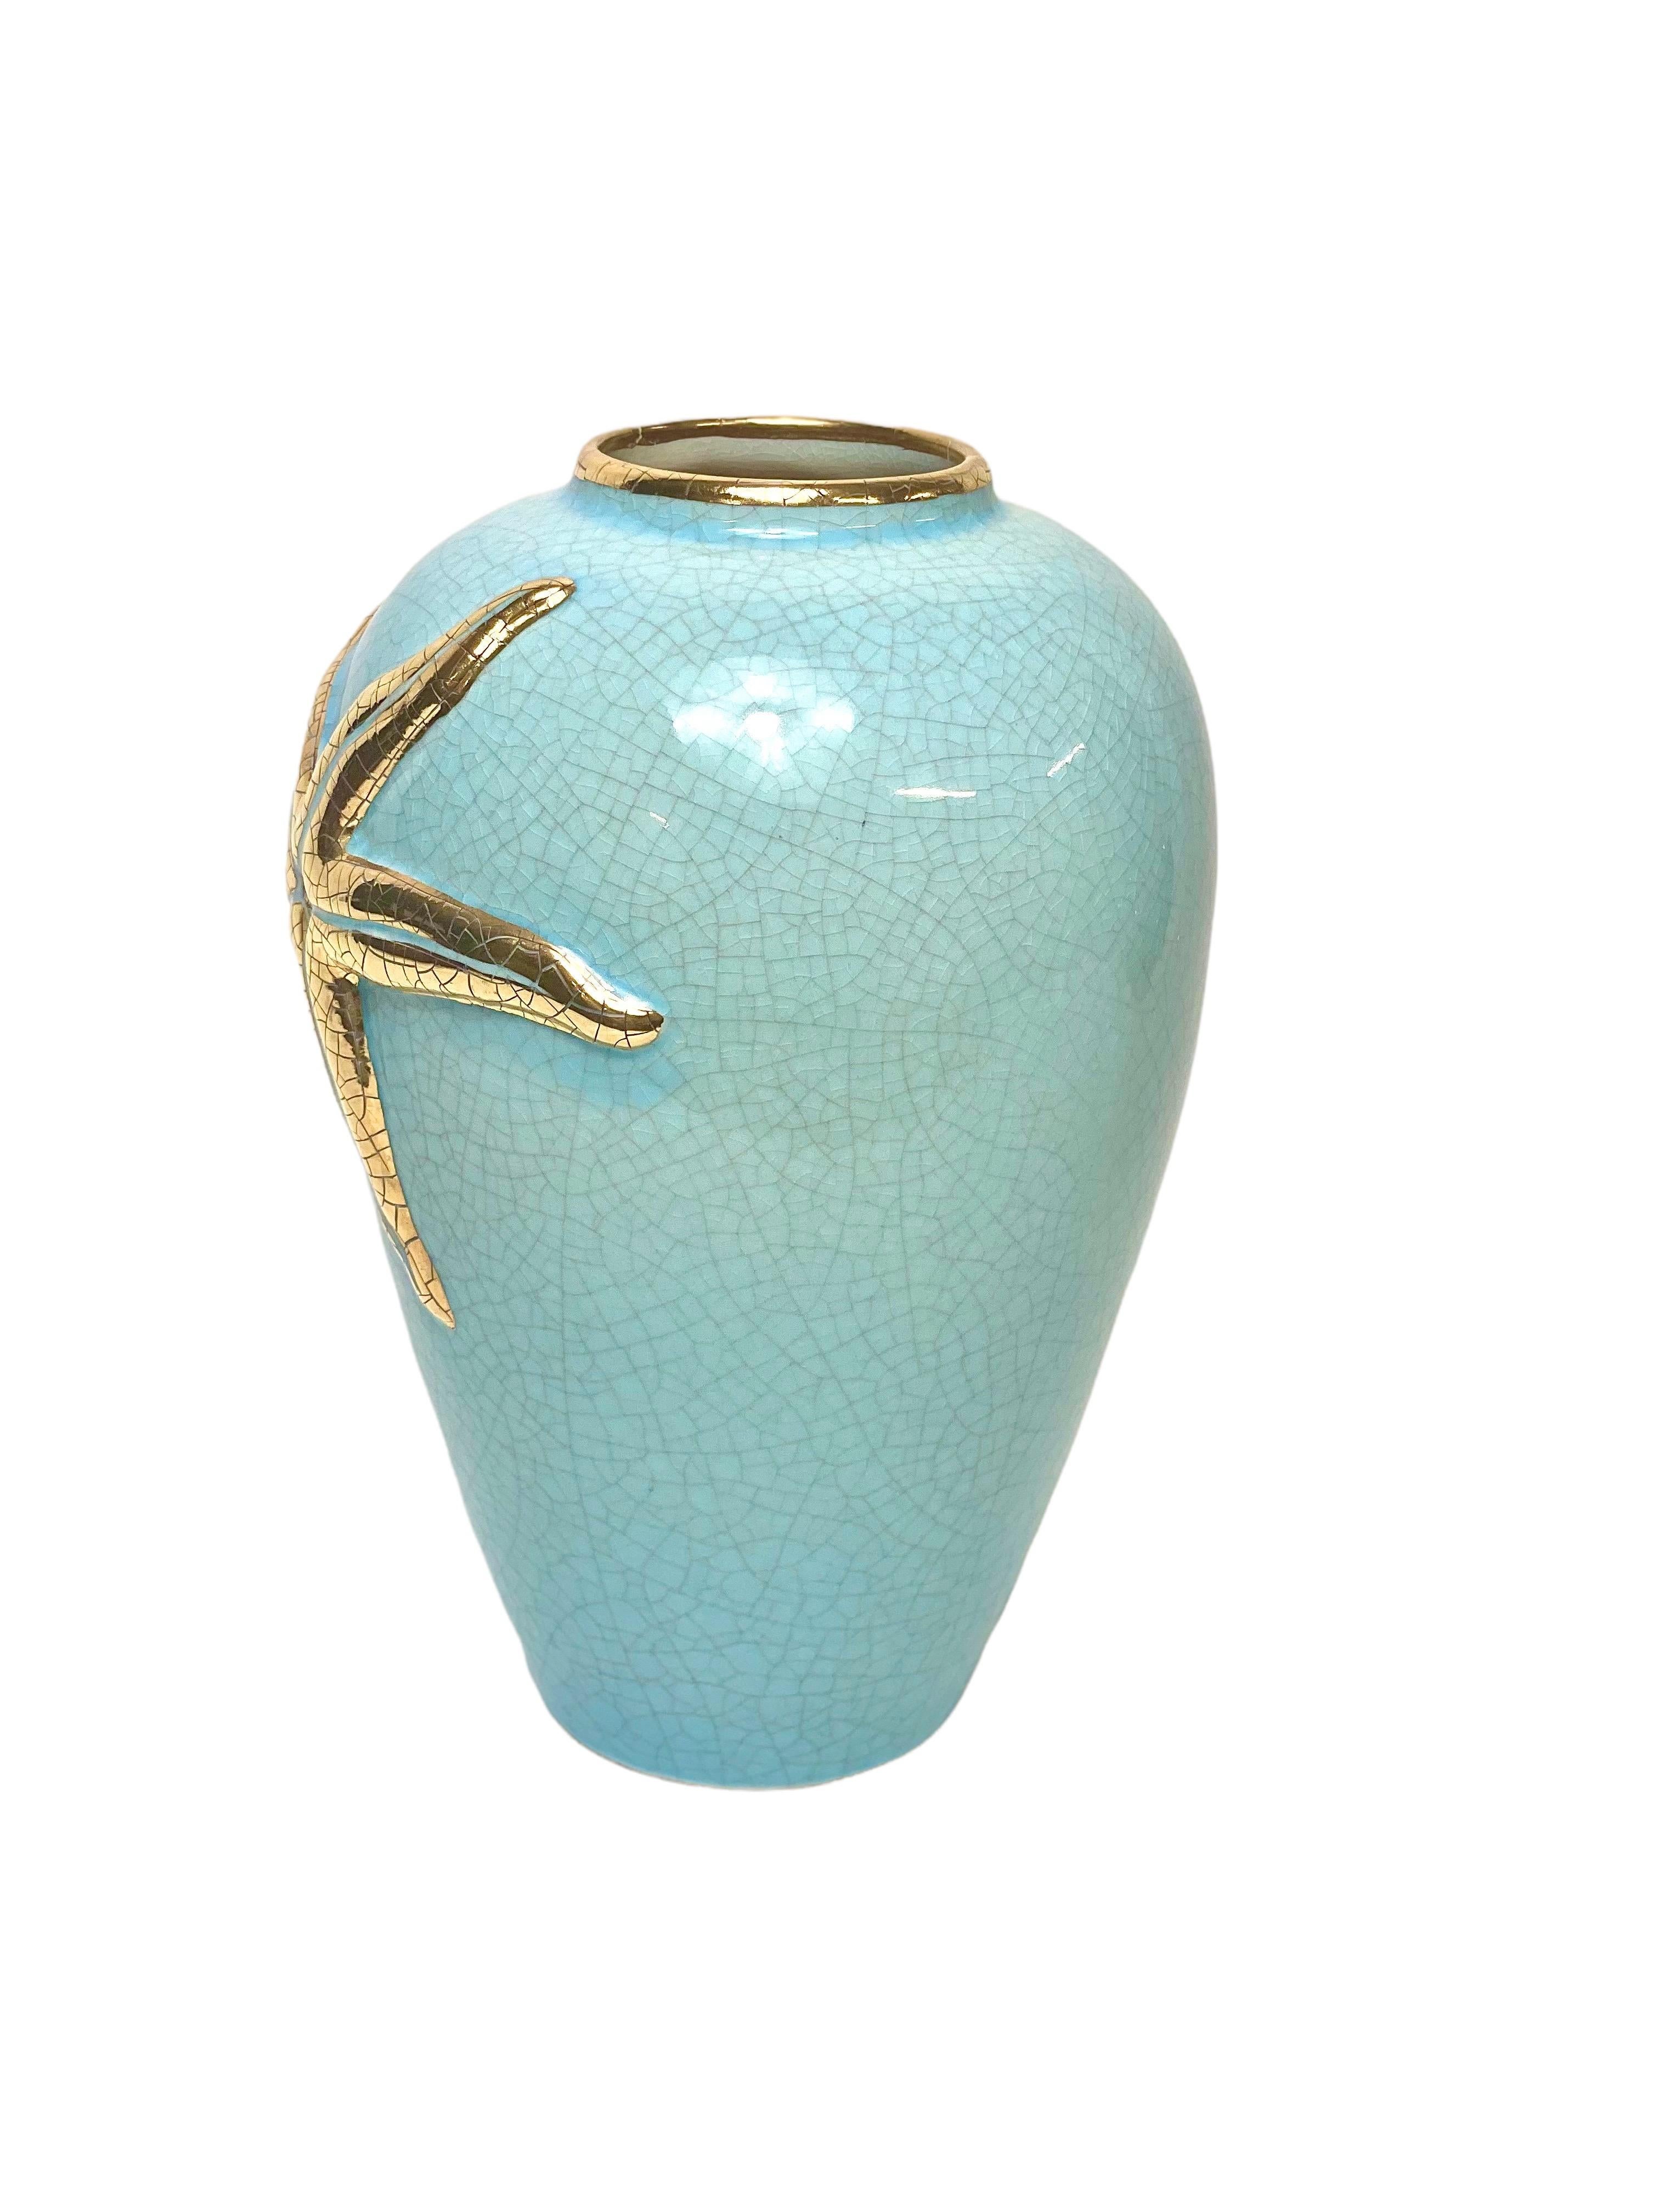 Eine ungewöhnliche Vase mit Longwy-Emaildekor, in der charakteristischen Farbe 